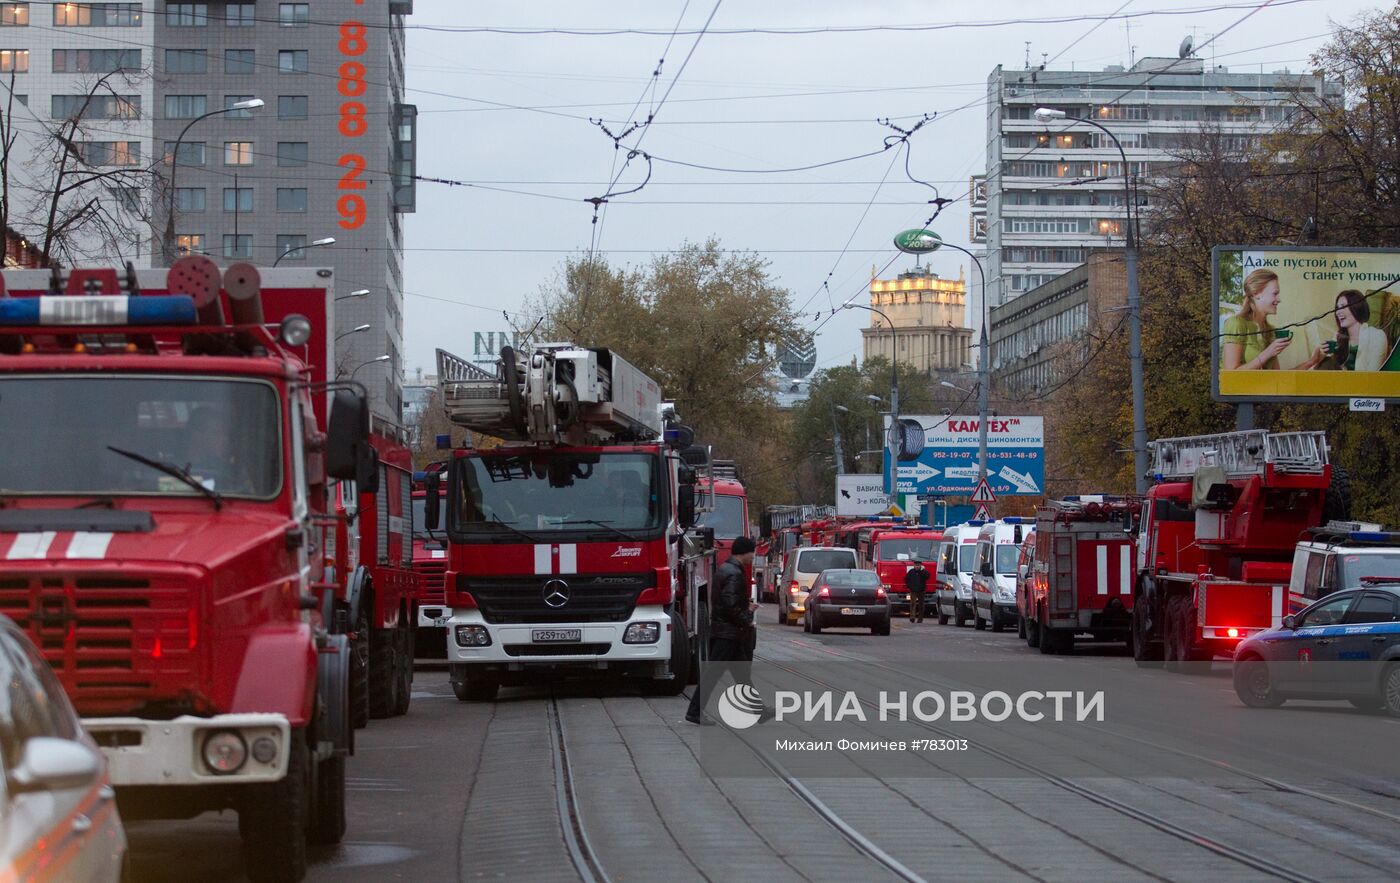 Тушение пожара в общежитии в Москве